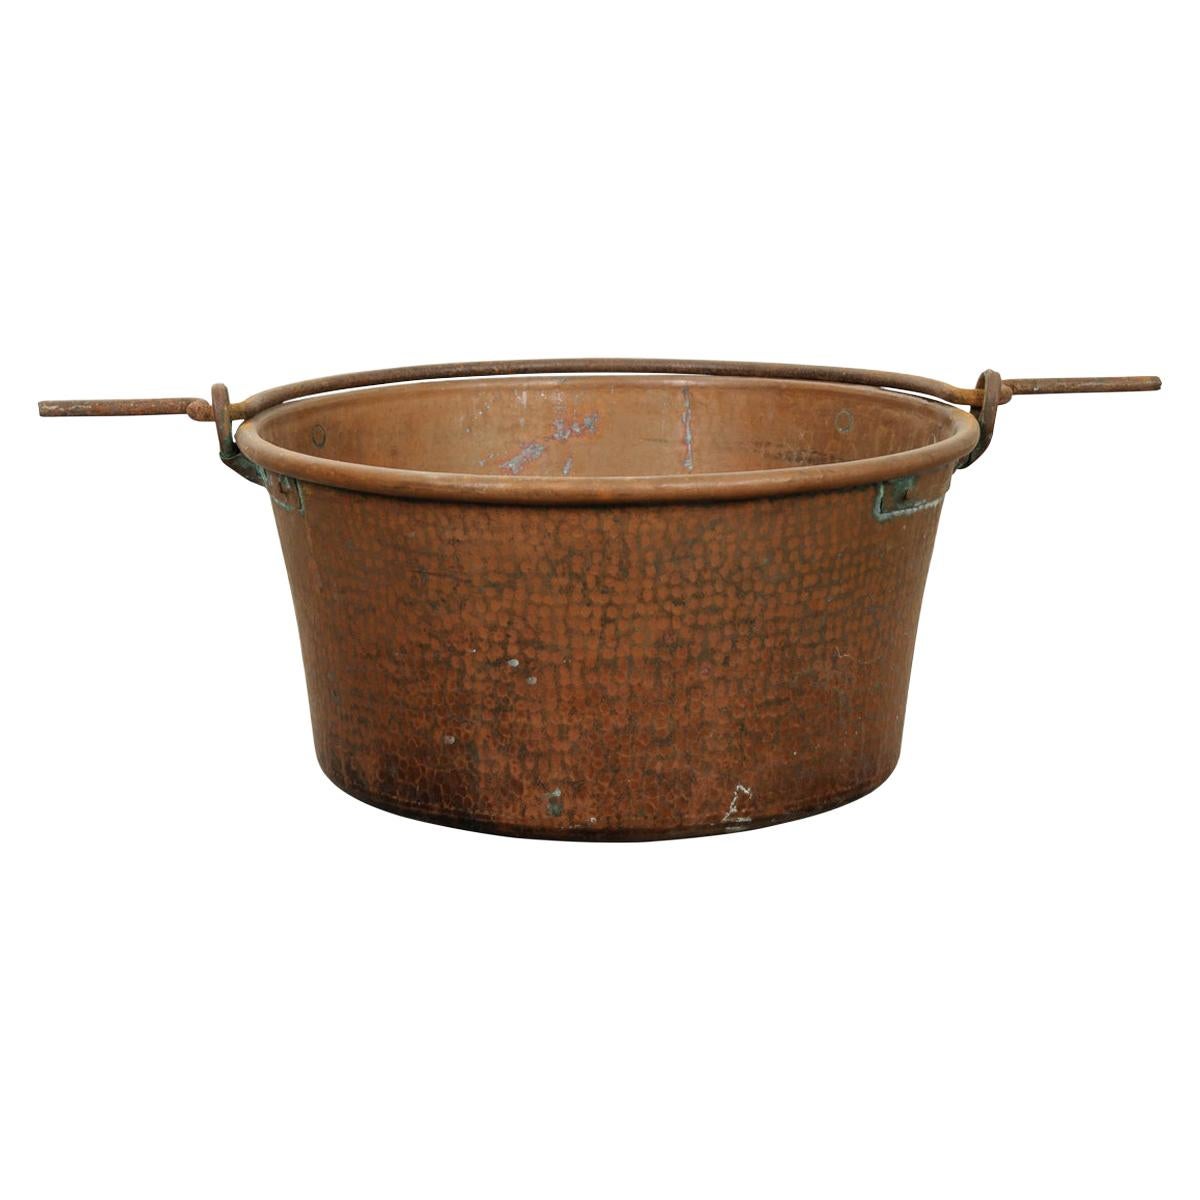 Grand pot en cuivre français avec poignée de suspension en fer